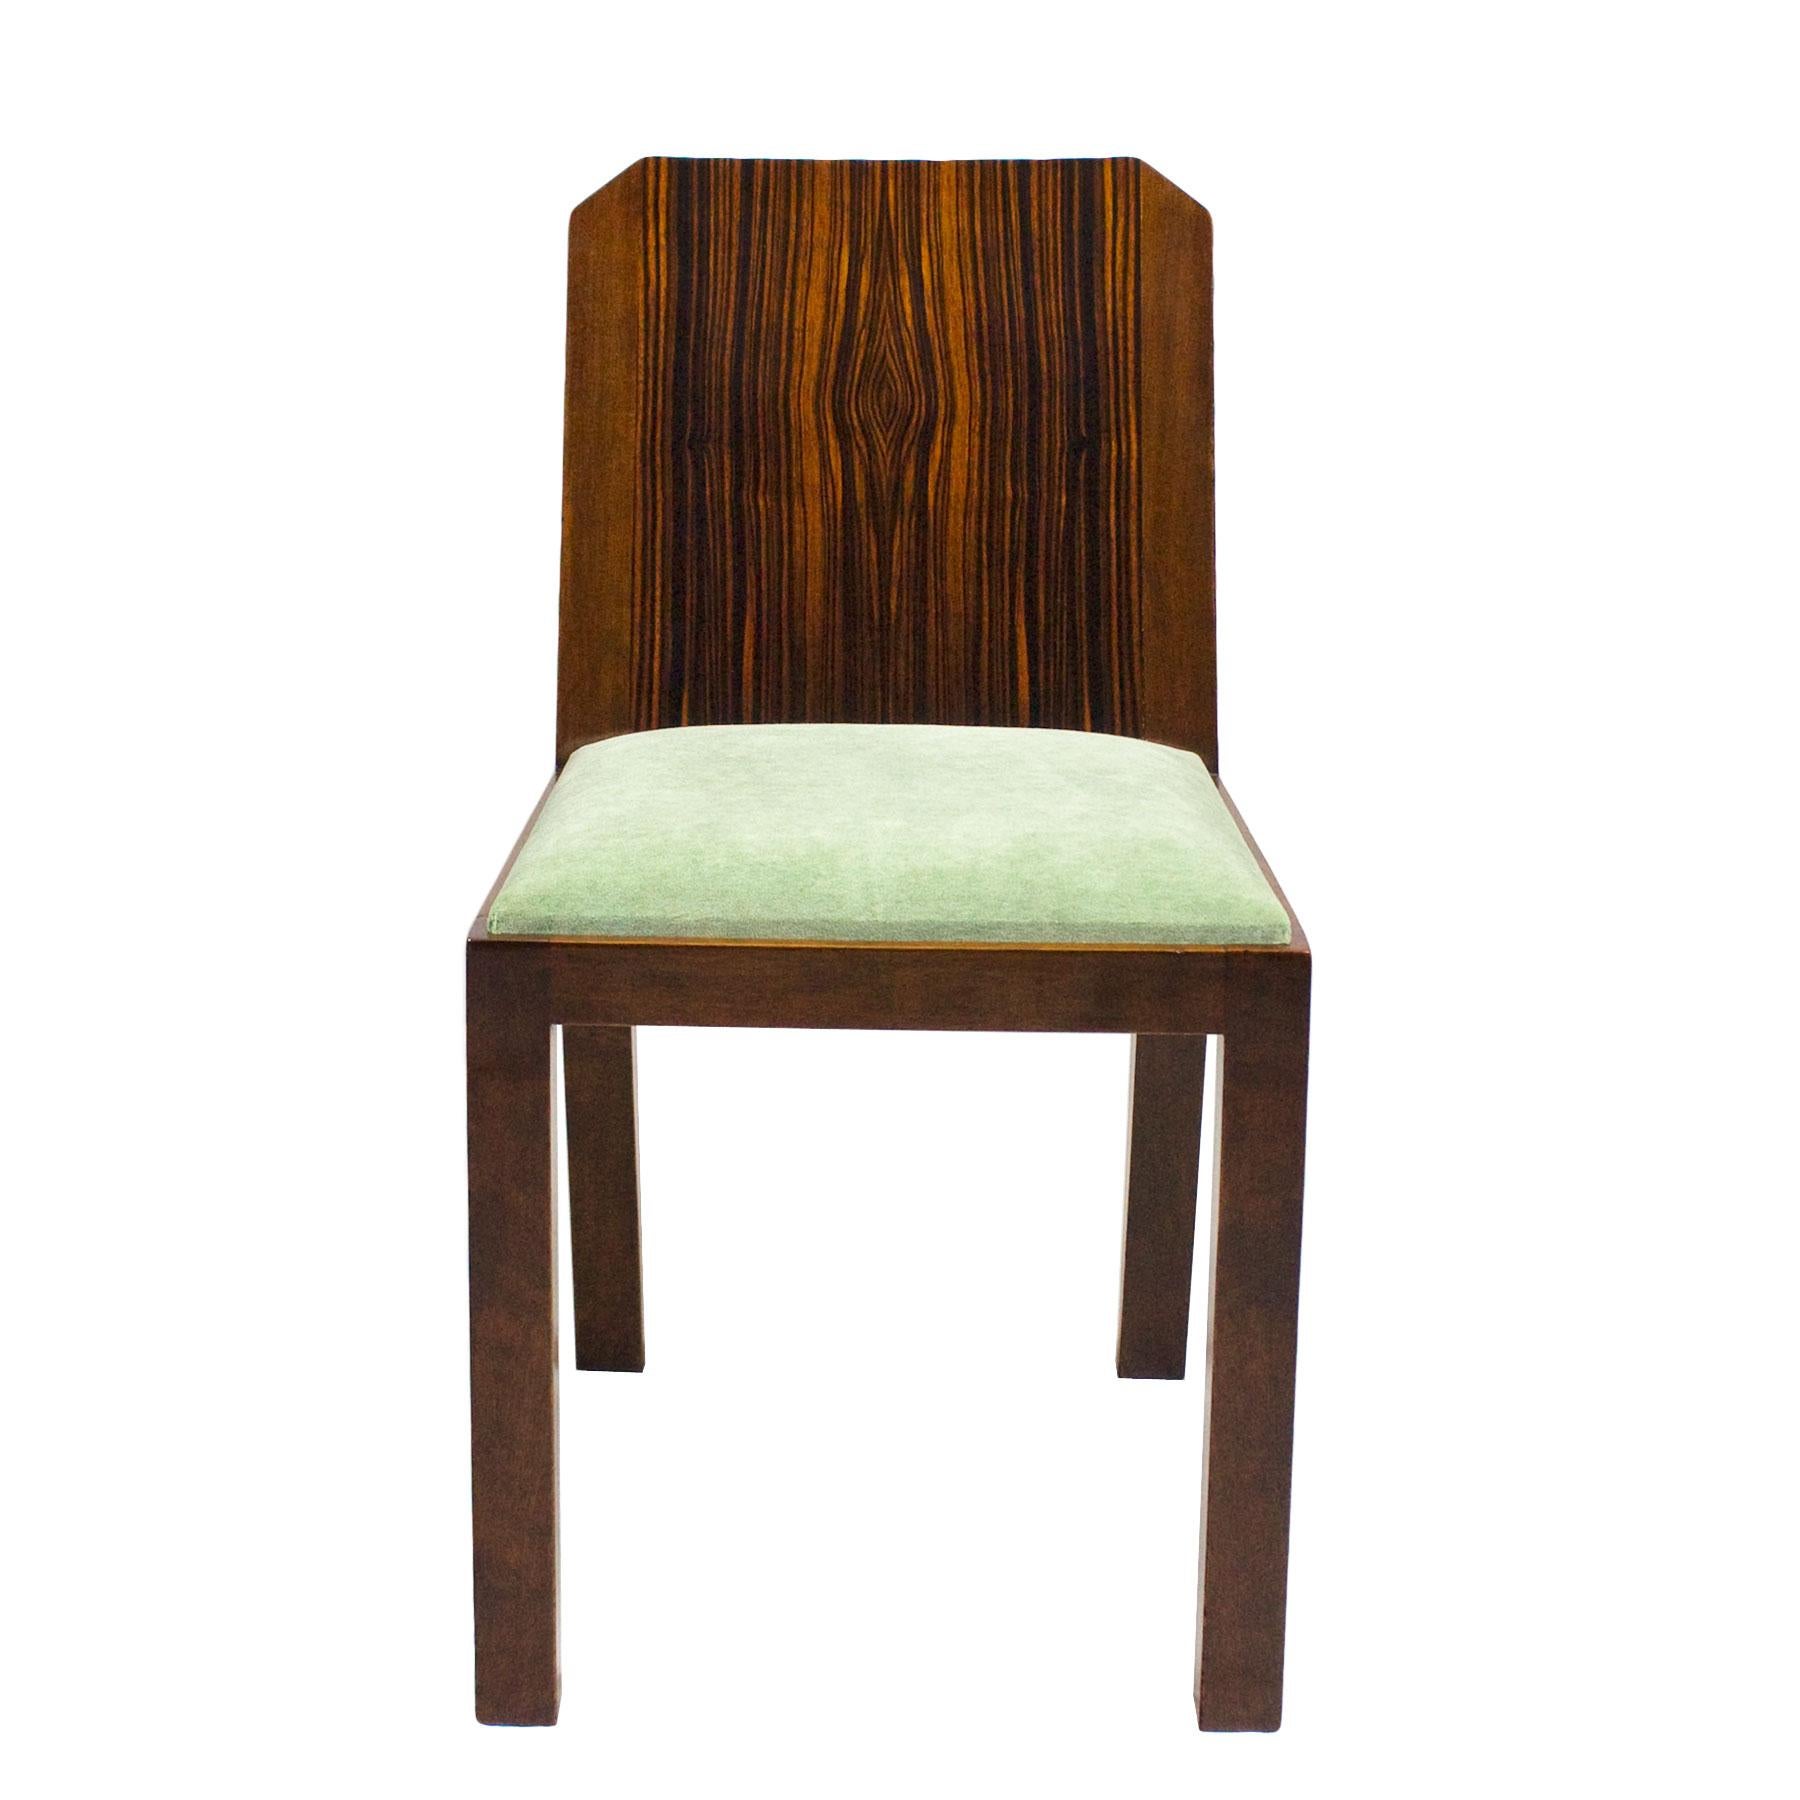 Satz von sechs Art Deco Stühlen, Nussbaum massiv und Makassar Ebenholz furniert, französisch poliert. Neue Sitze mit celadongrünem Samtbezug.

Frankreich, um 1930.